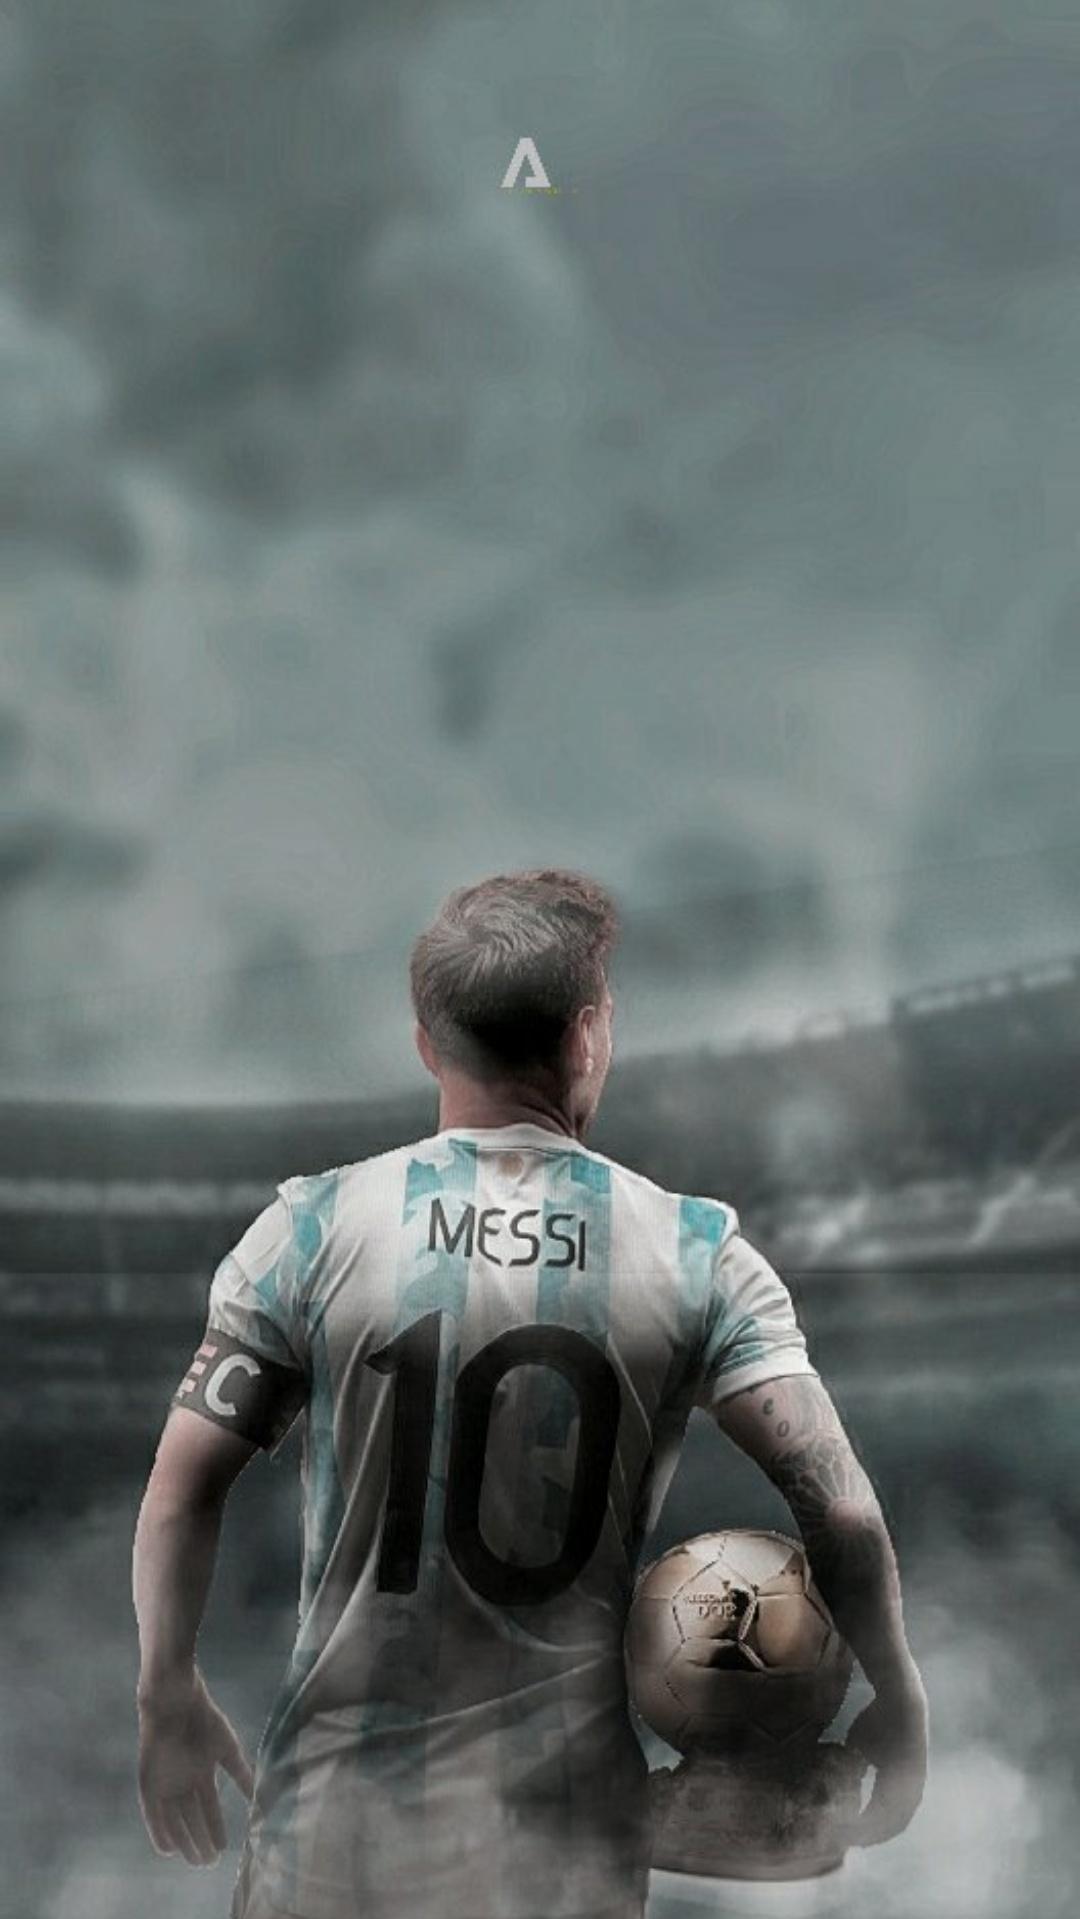 Messi 2022 World Cup Wallpapers đem lại sự phấn khích và háo hức cho người hâm mộ bóng đá trên khắp thế giới. Bạn sẽ không thể bỏ qua những hình nền tuyệt đẹp được thiết kế với sự hào phóng và kỳ vĩ của ngôi sao bóng đá này.